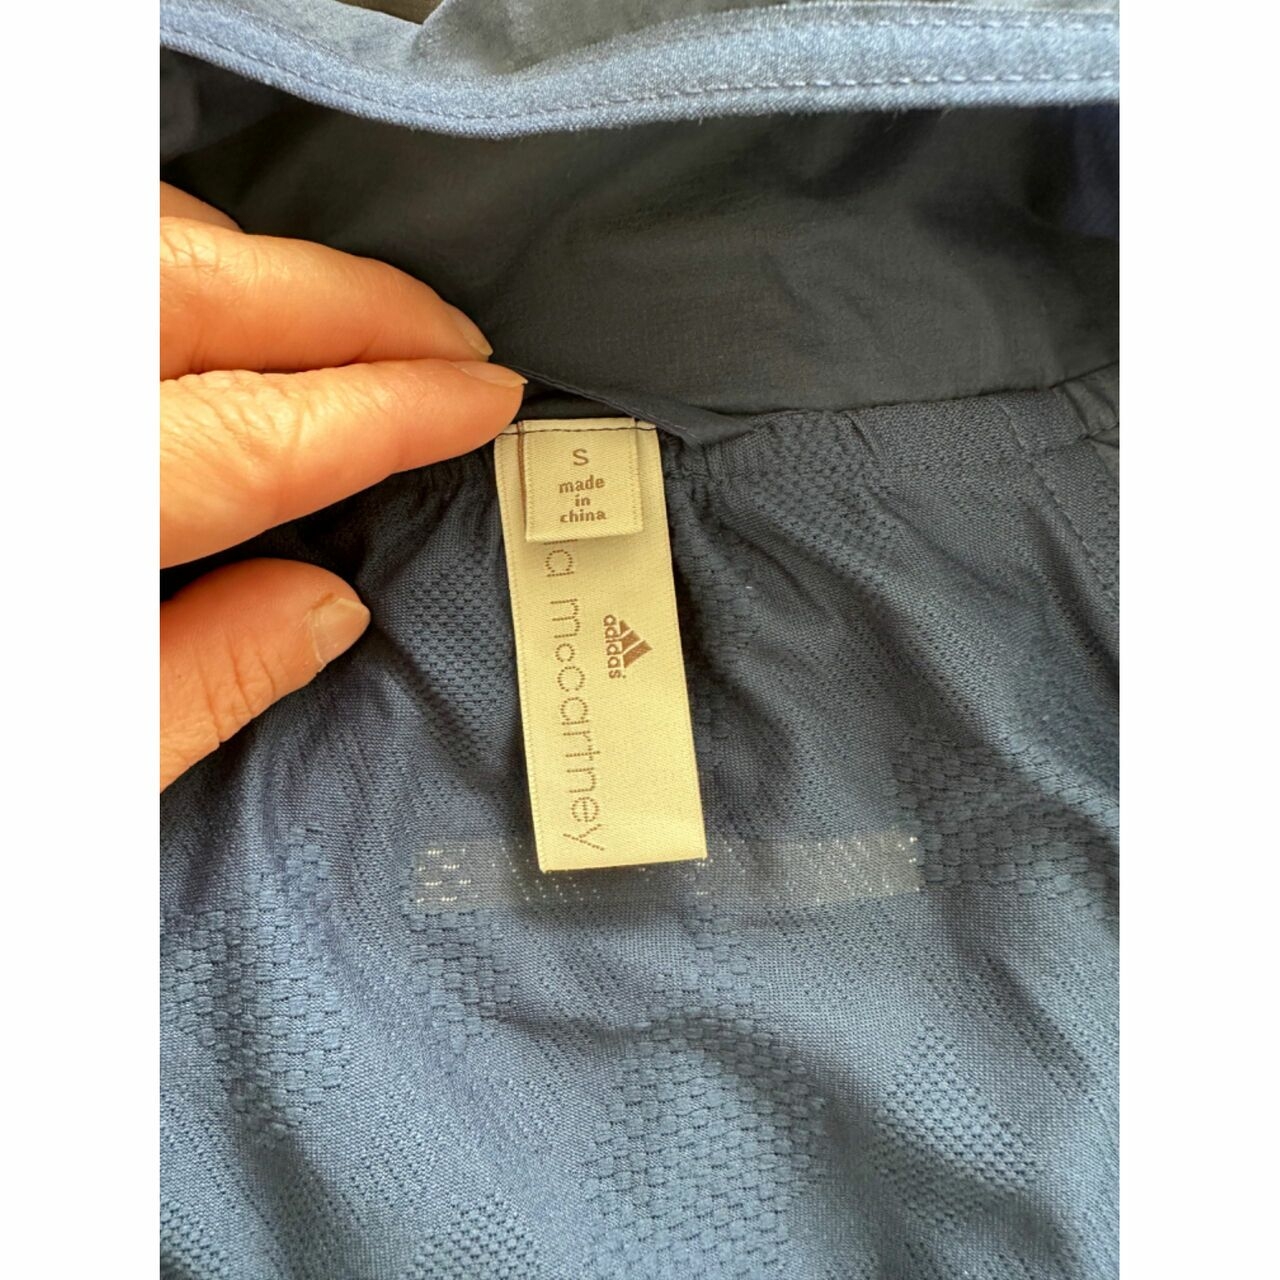 Adidas Stella Mccartney Navy Vest